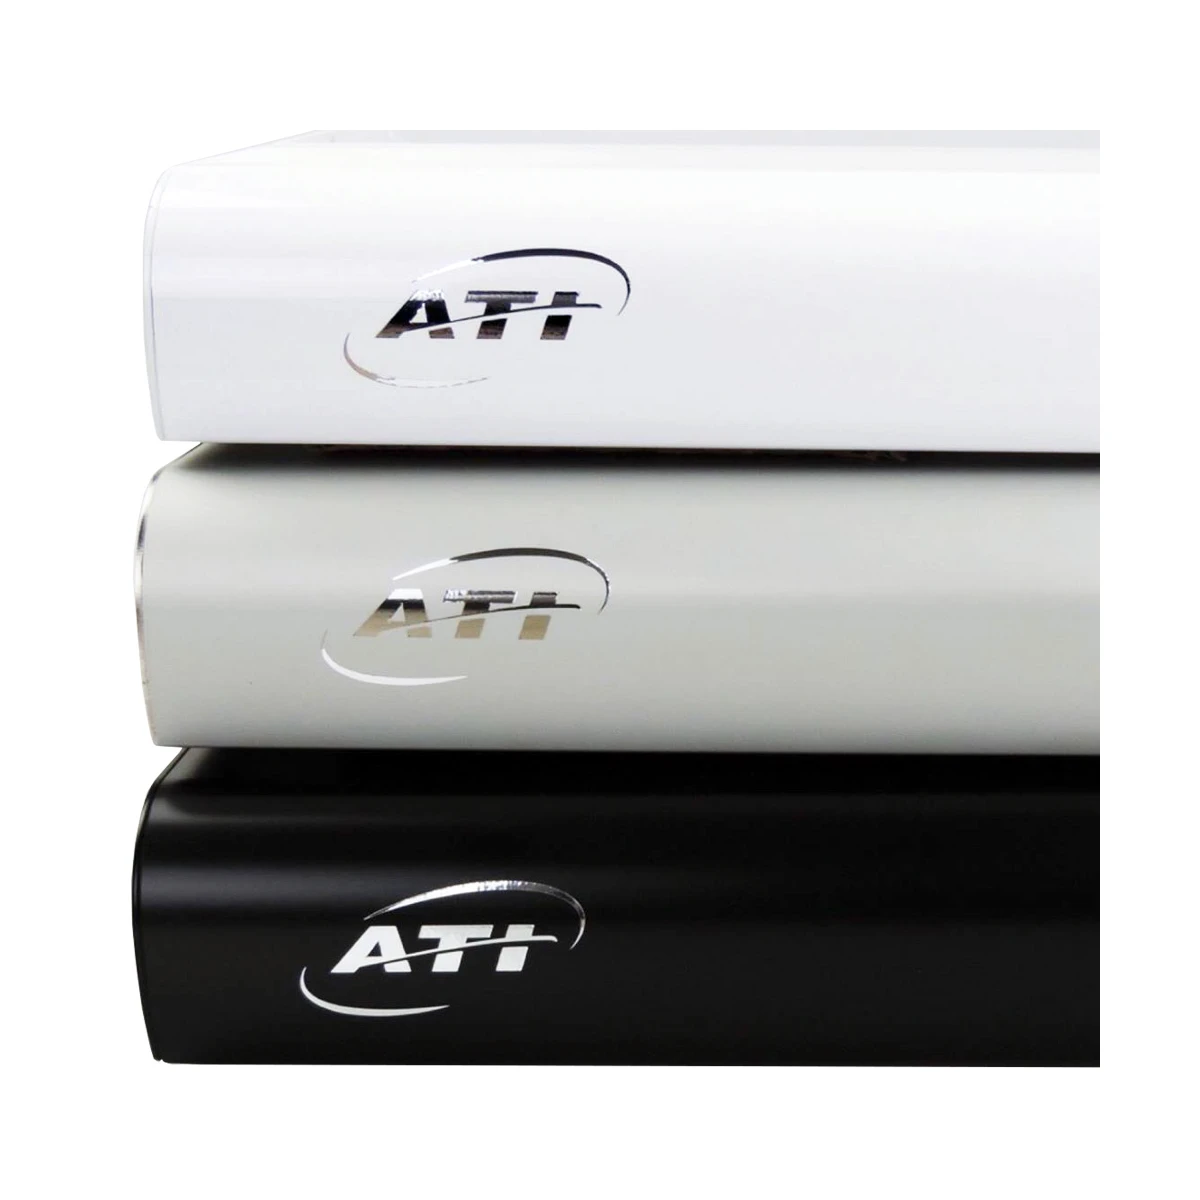 ATI Hybrid LED-Powermodul 4x54 Watt T5 + 3x75 Watt LED WiFi (1010002) weiss